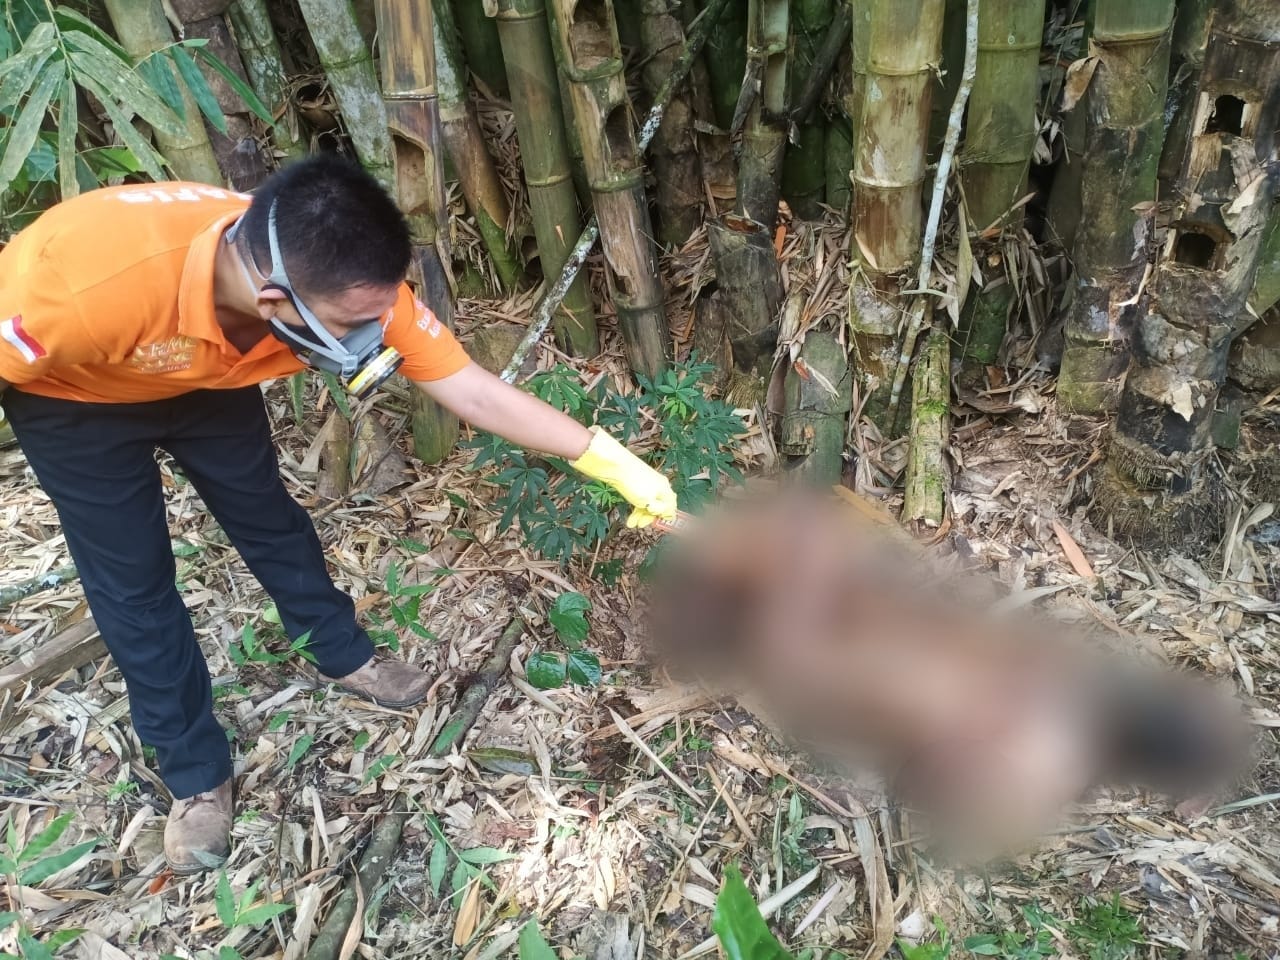 Mayat Tanpa Busana Ditemukan di Bawah Rumpun Bambu